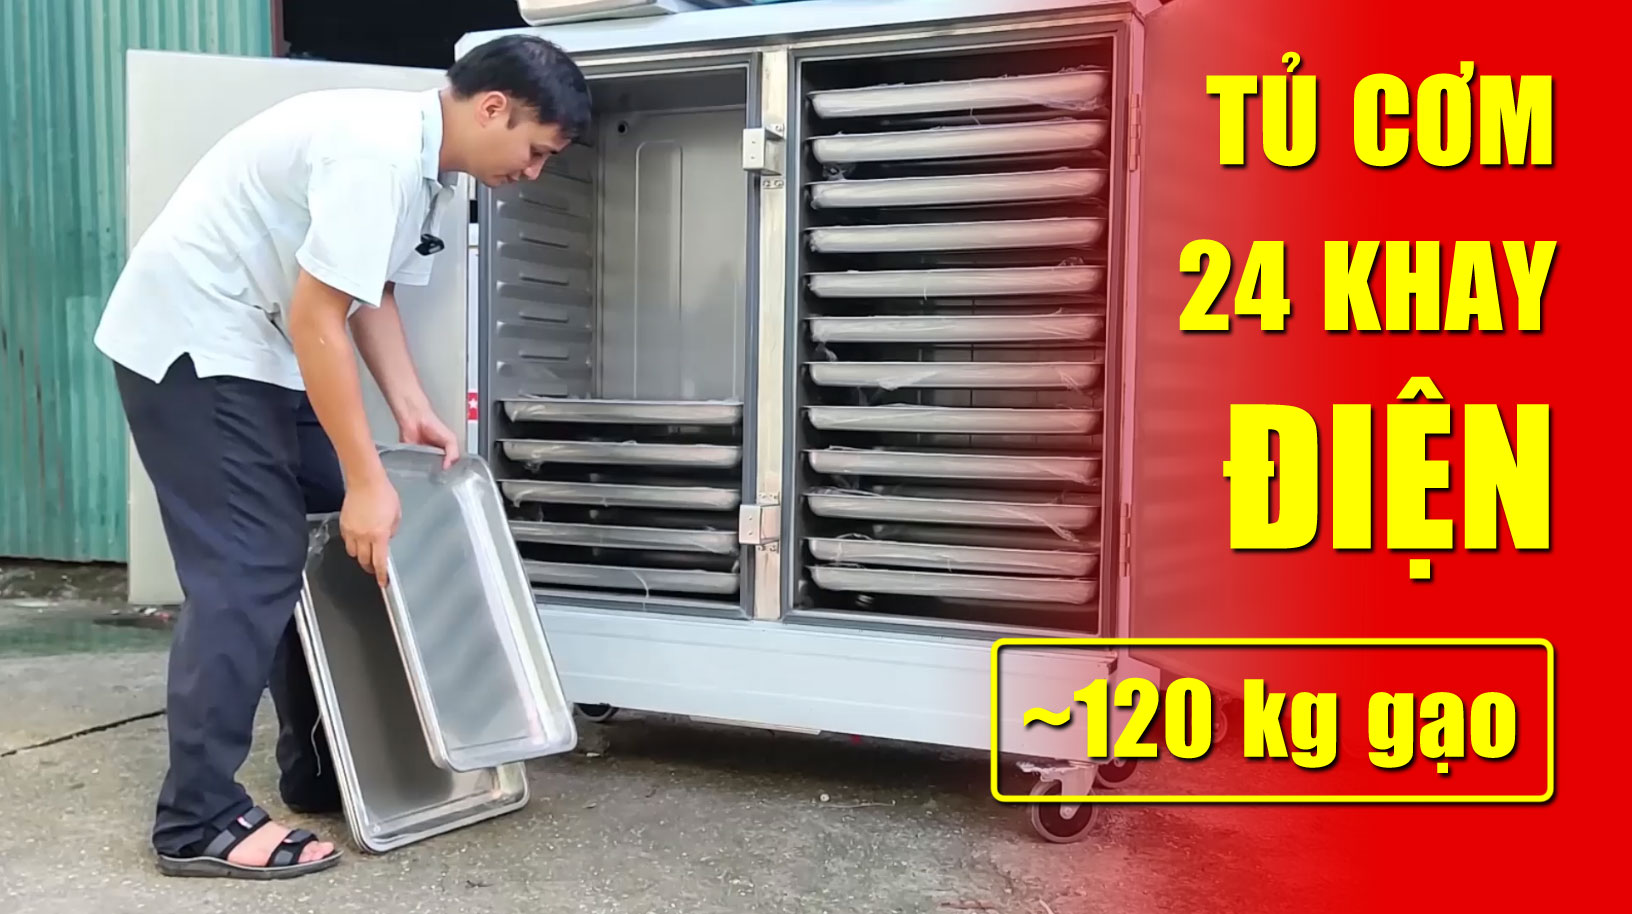 Video thực tế tủ cơm 24 khay nấu hấp công nghiệp điện 3 pha